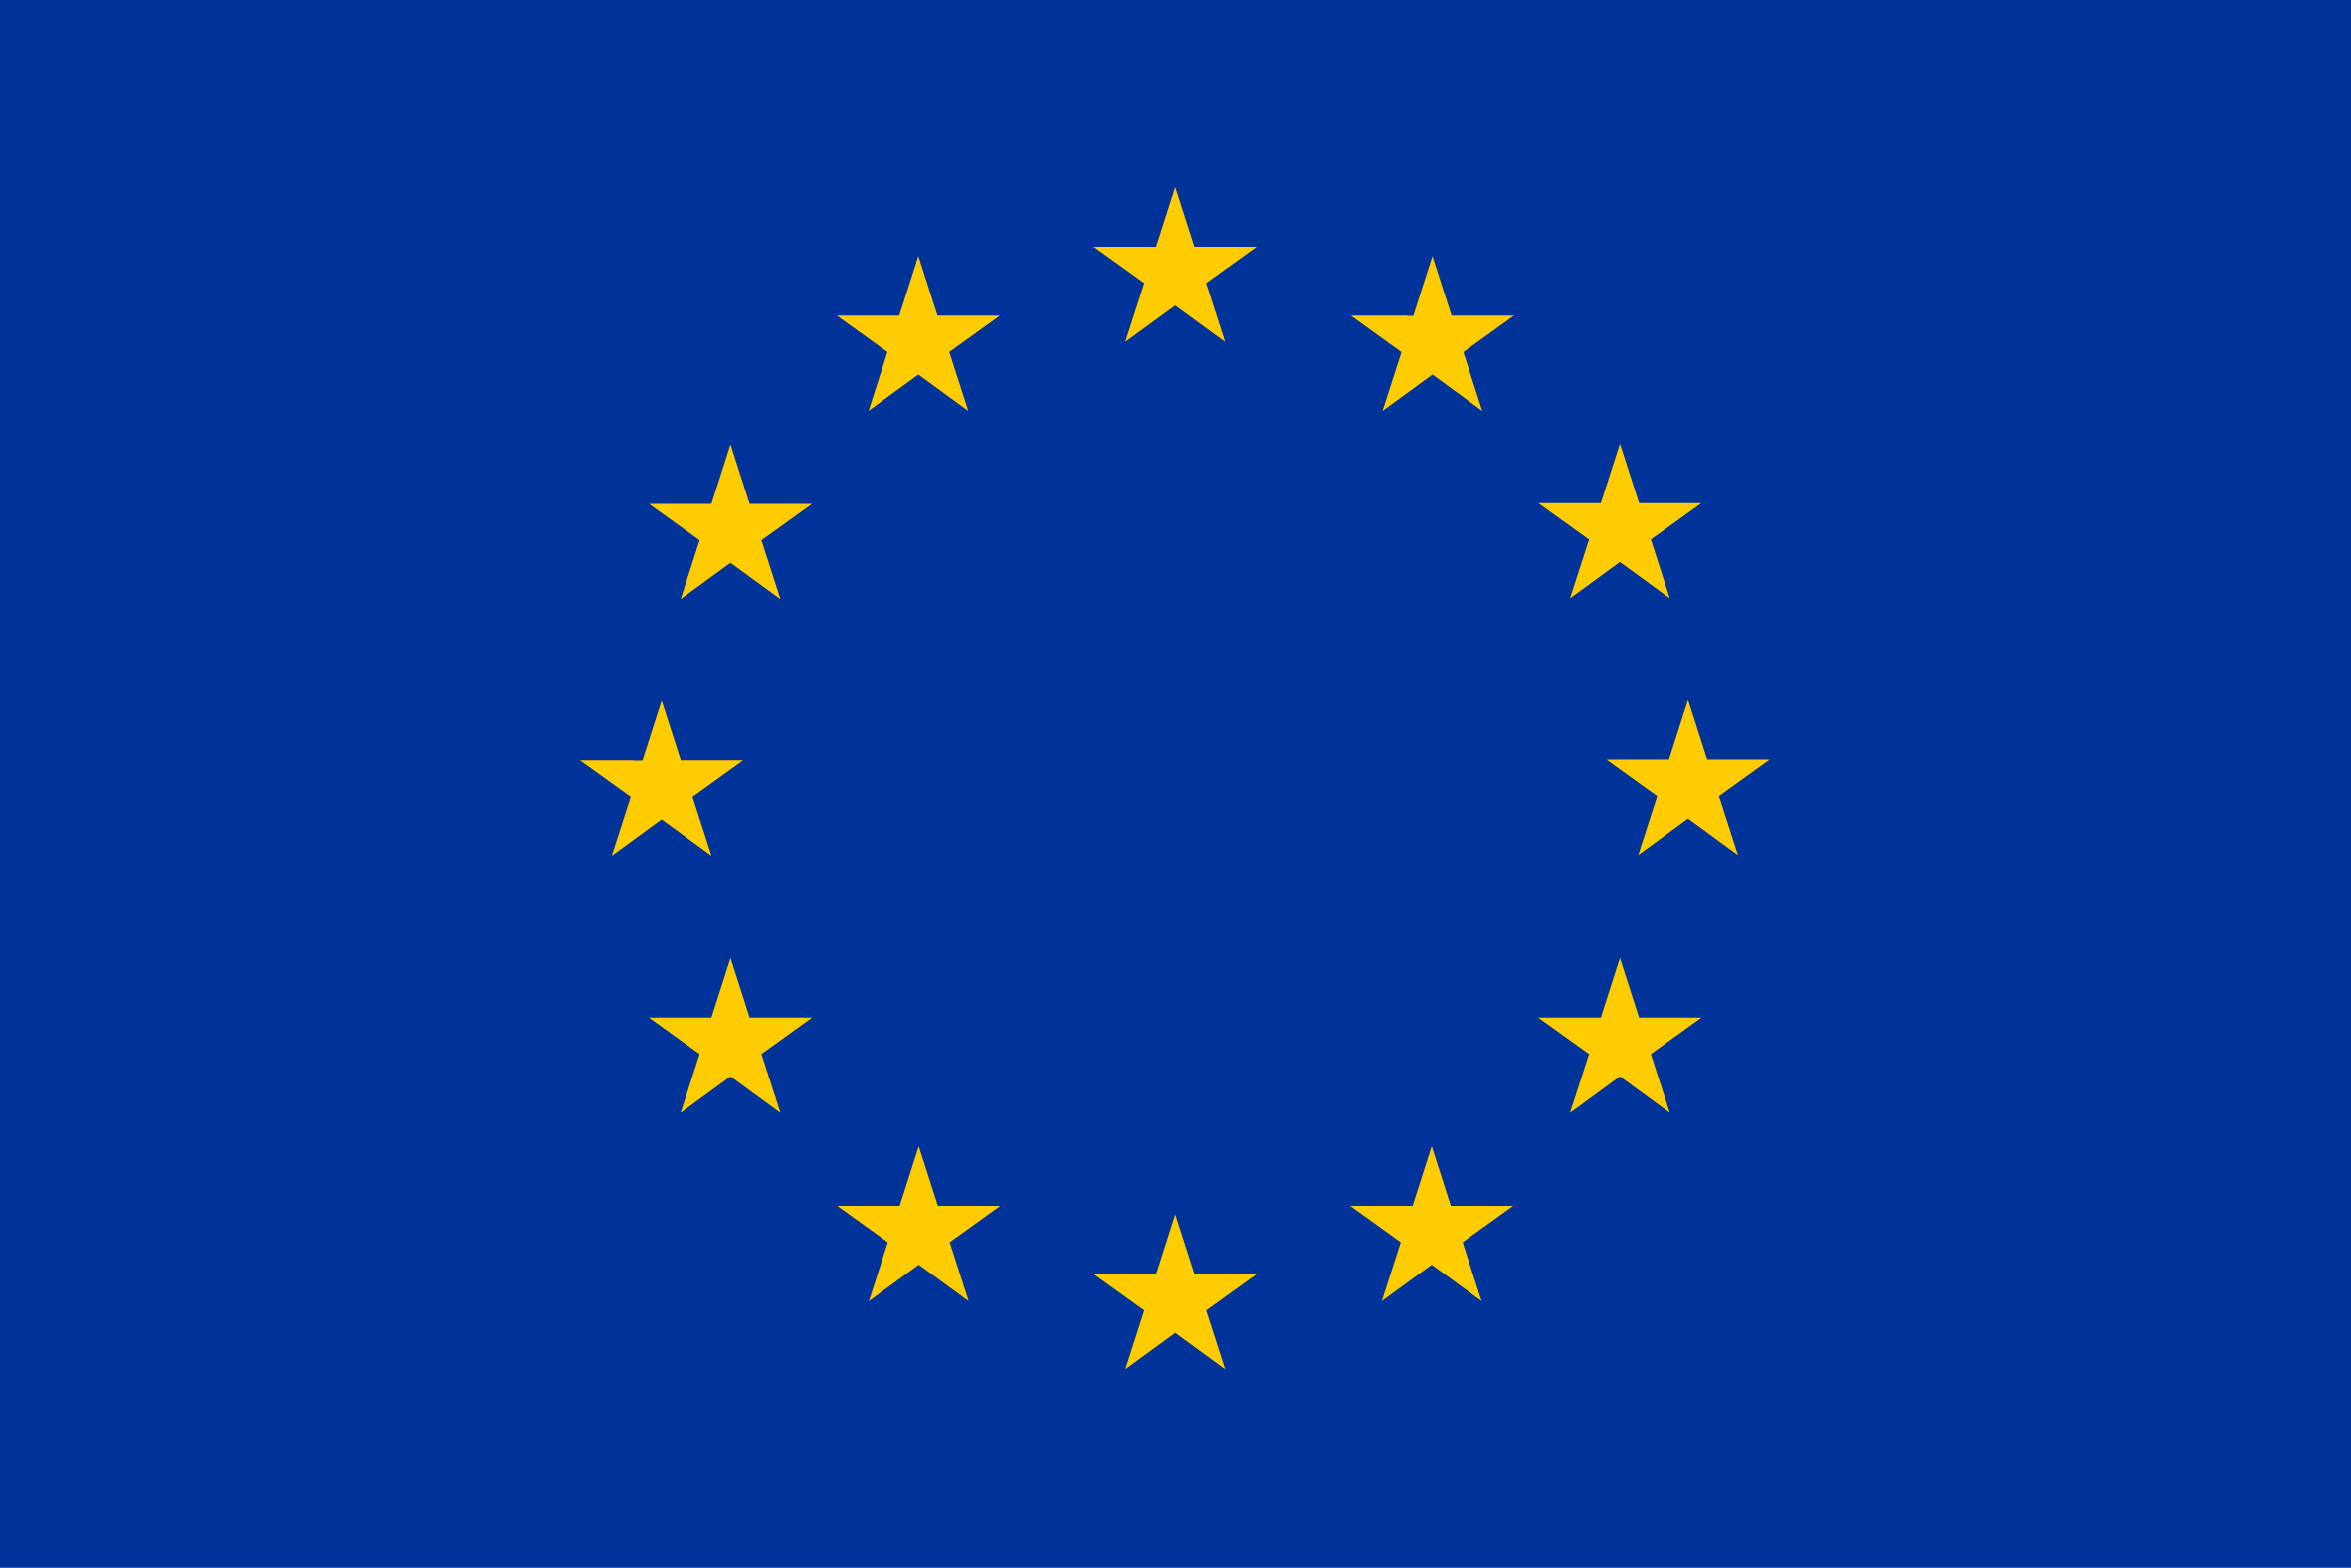 Unió Europea